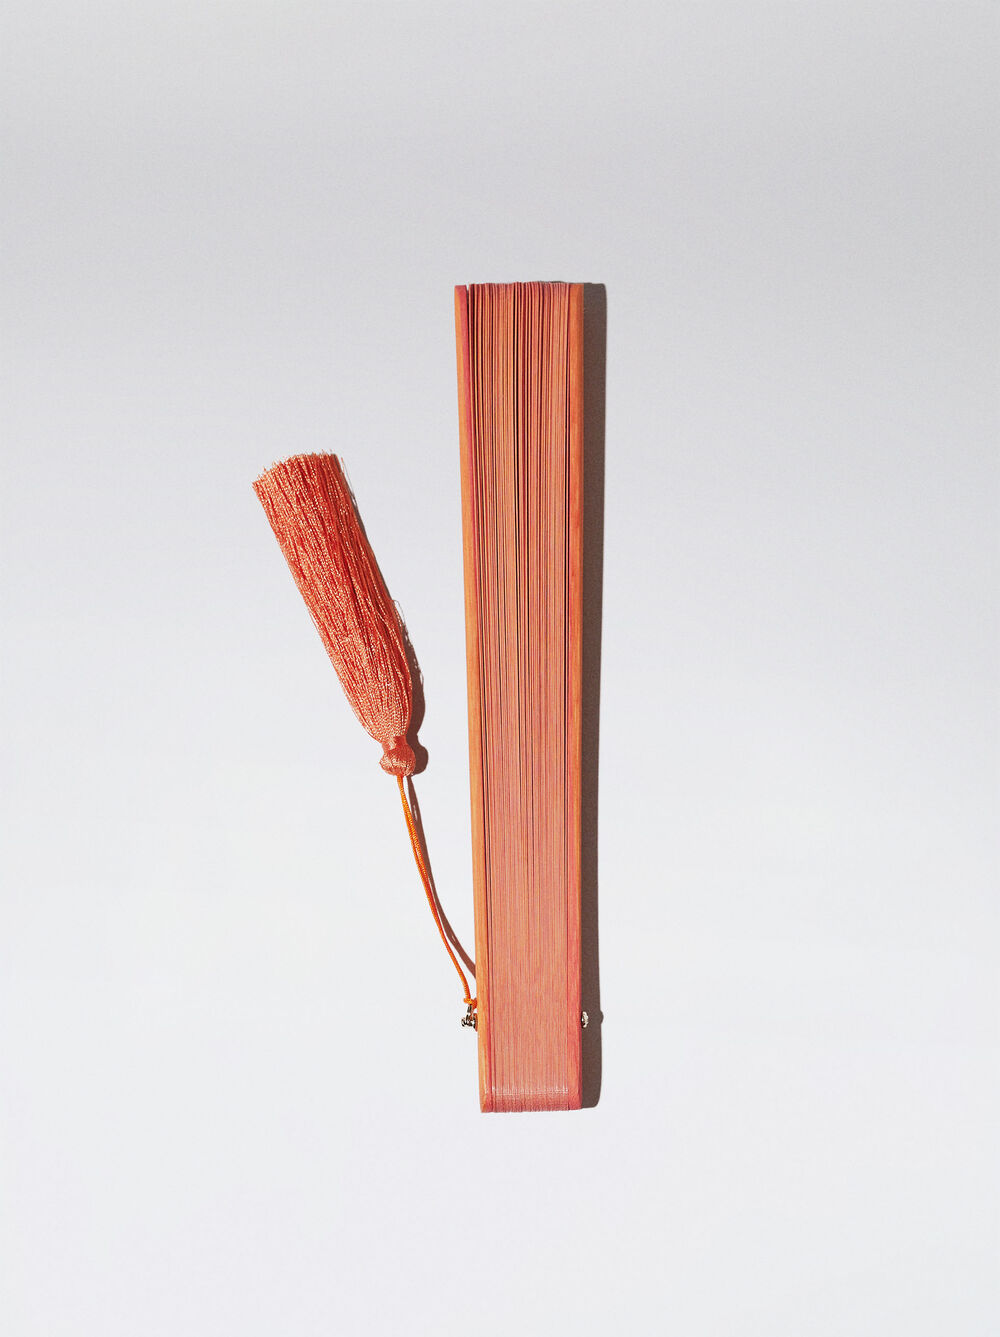 Abanico Bambú Con Perforado